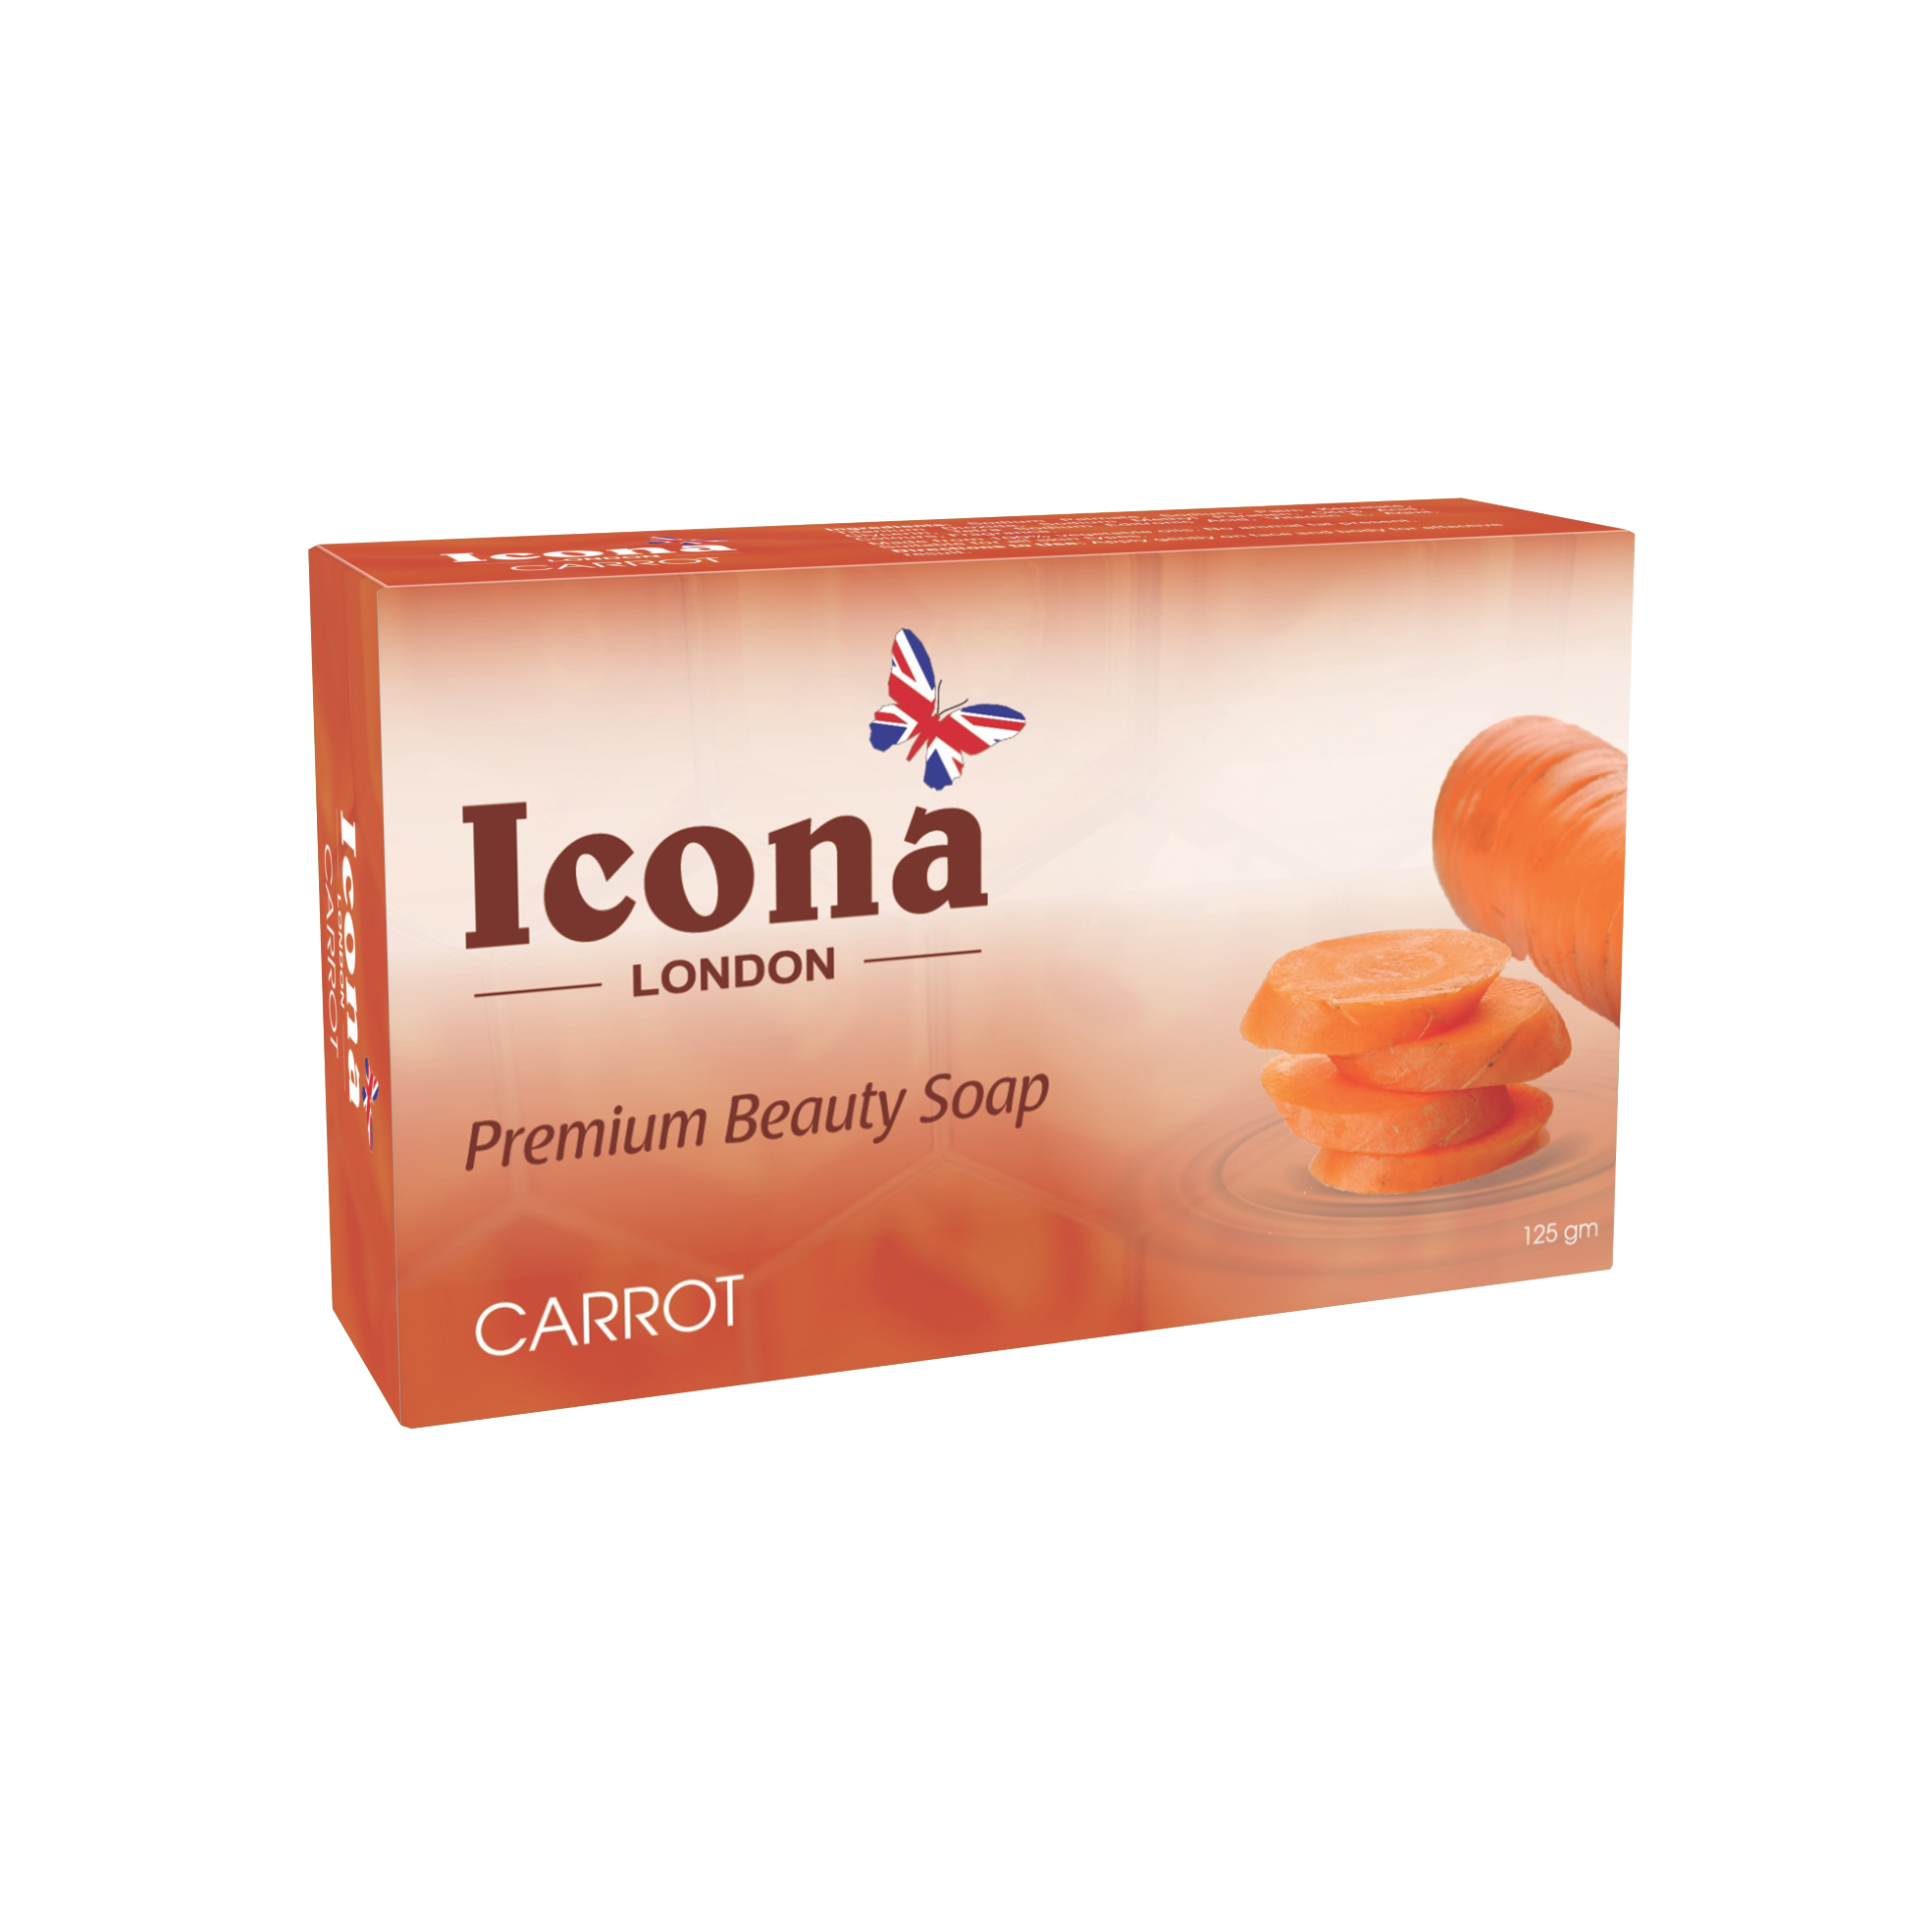 Icona London Beauty Soap (Carrot)